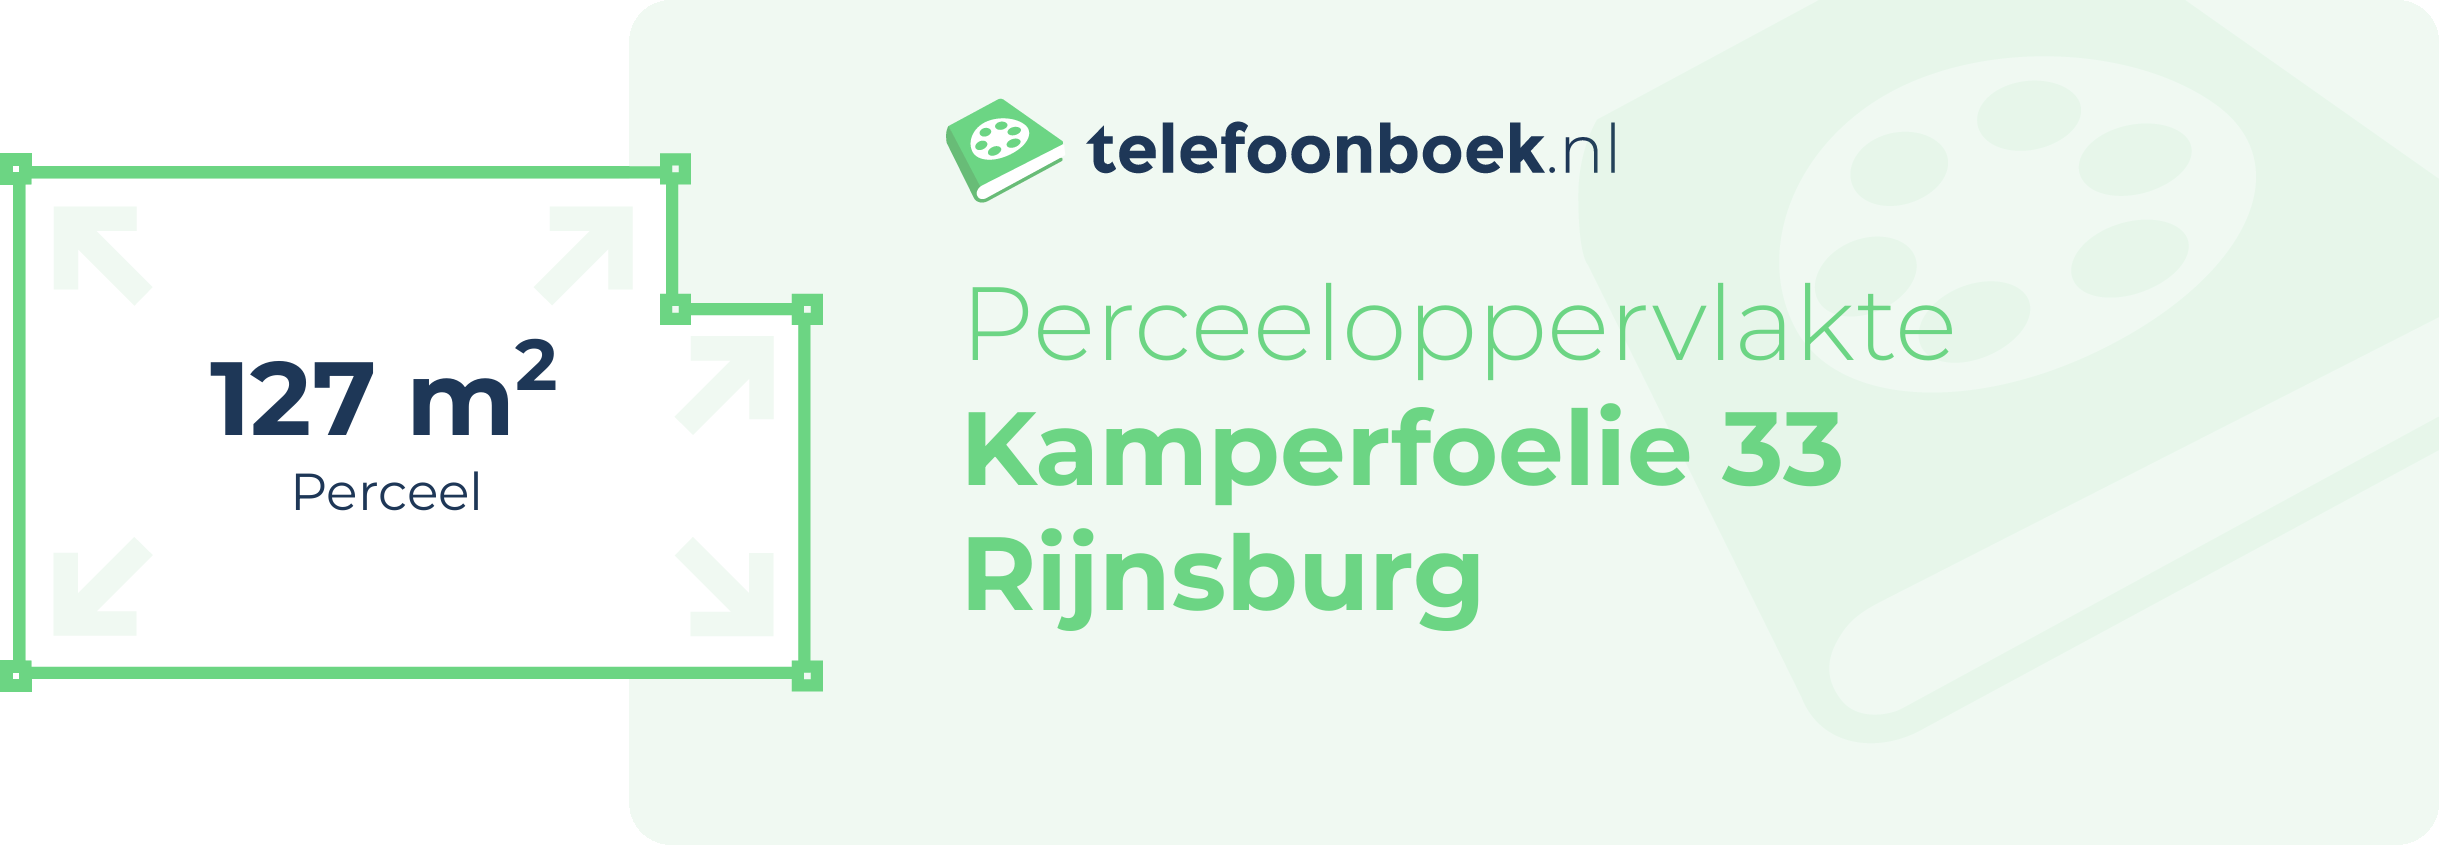 Perceeloppervlakte Kamperfoelie 33 Rijnsburg